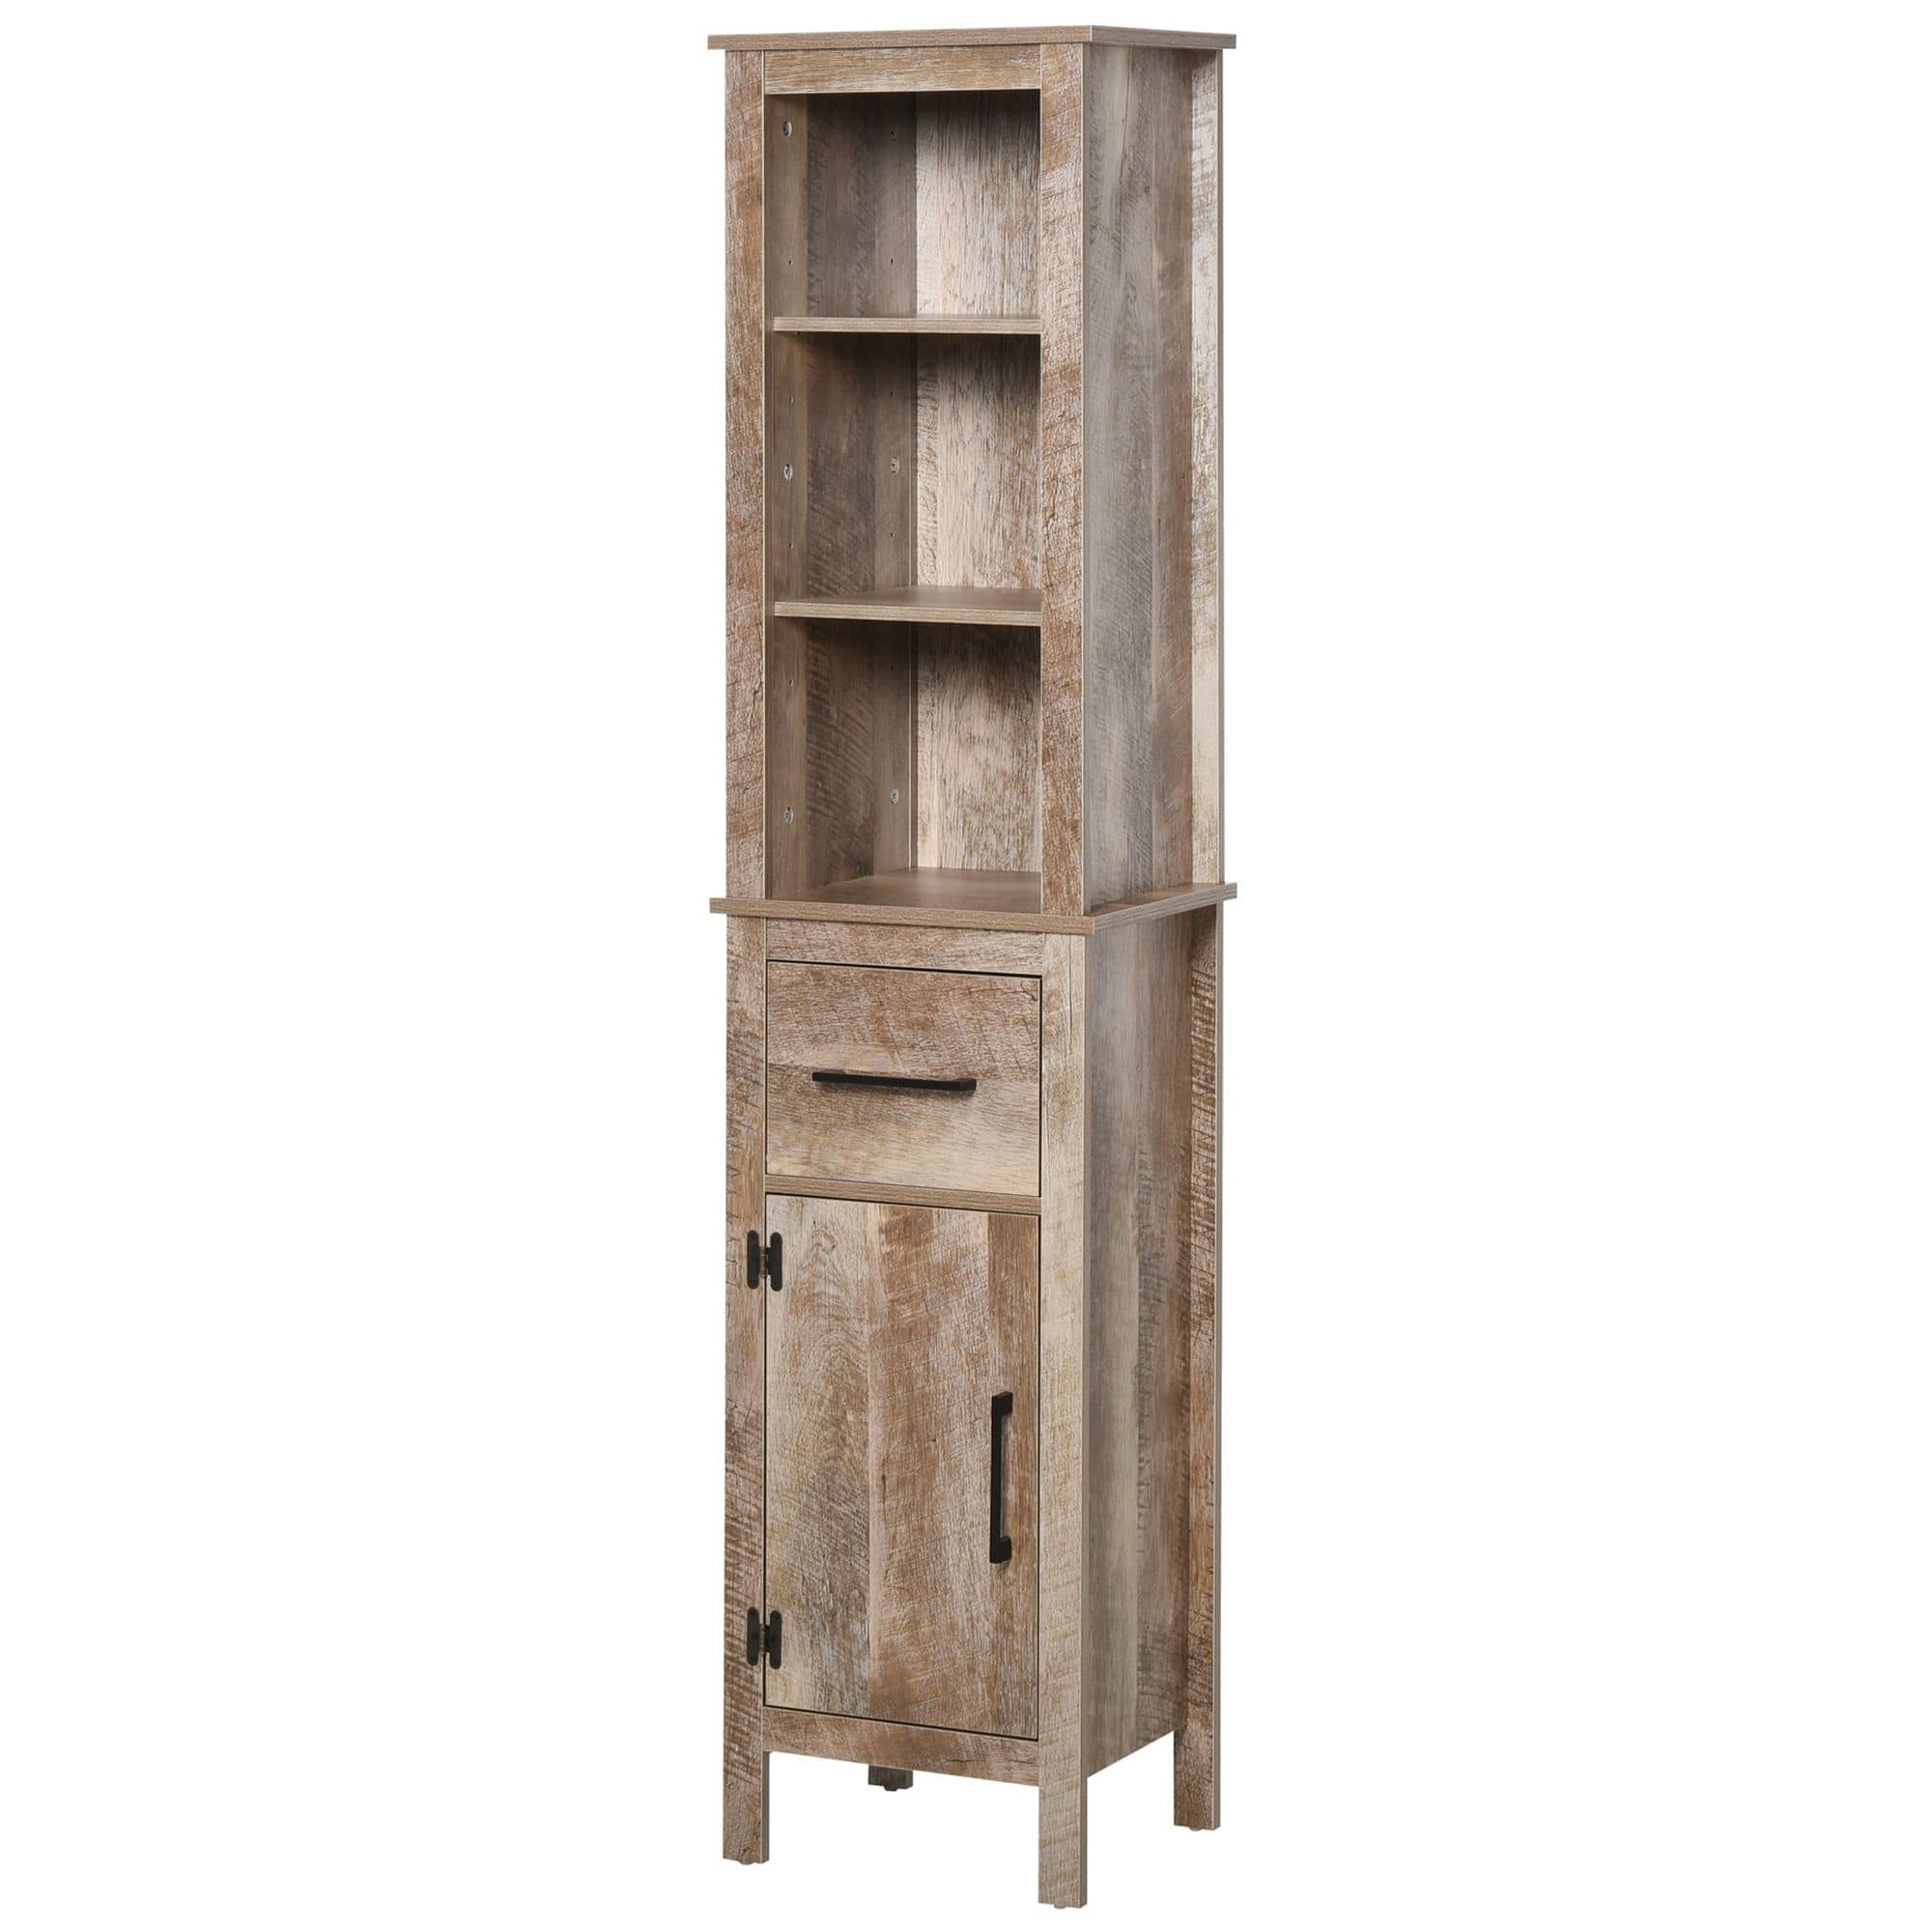 Bathroom Storage Cabinet, Freestanding Linen Tower with 3-Tier Open ...